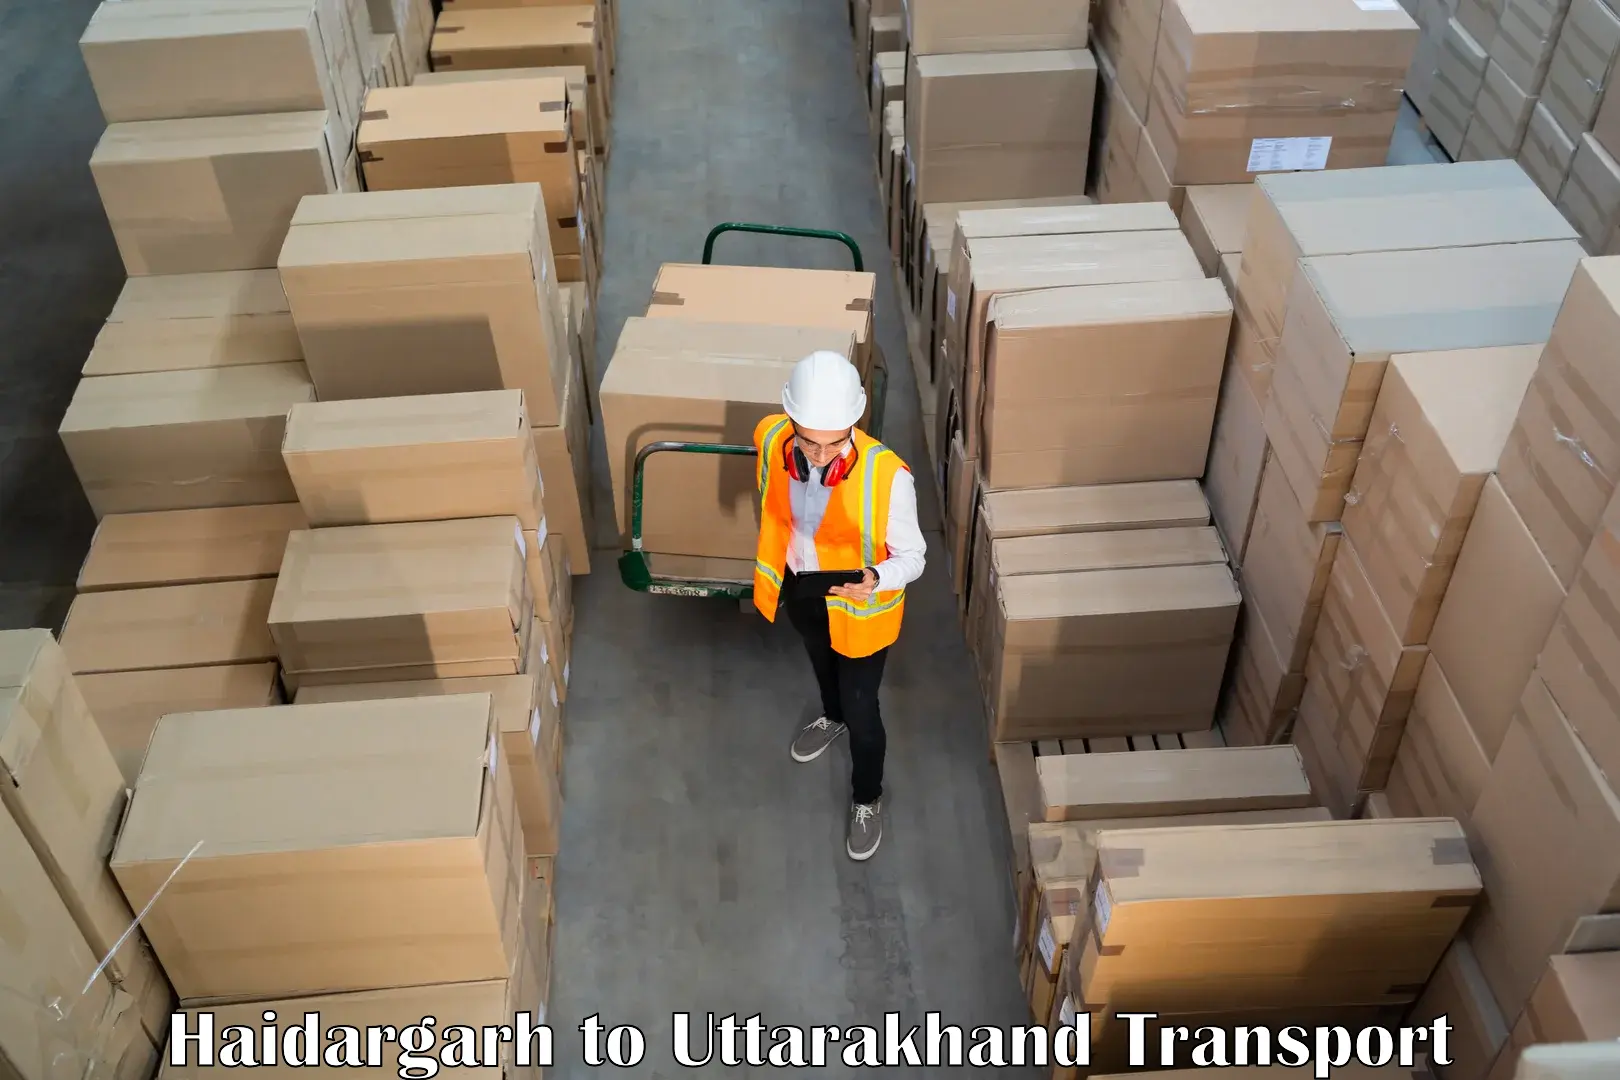 Truck transport companies in India Haidargarh to Uttarakhand